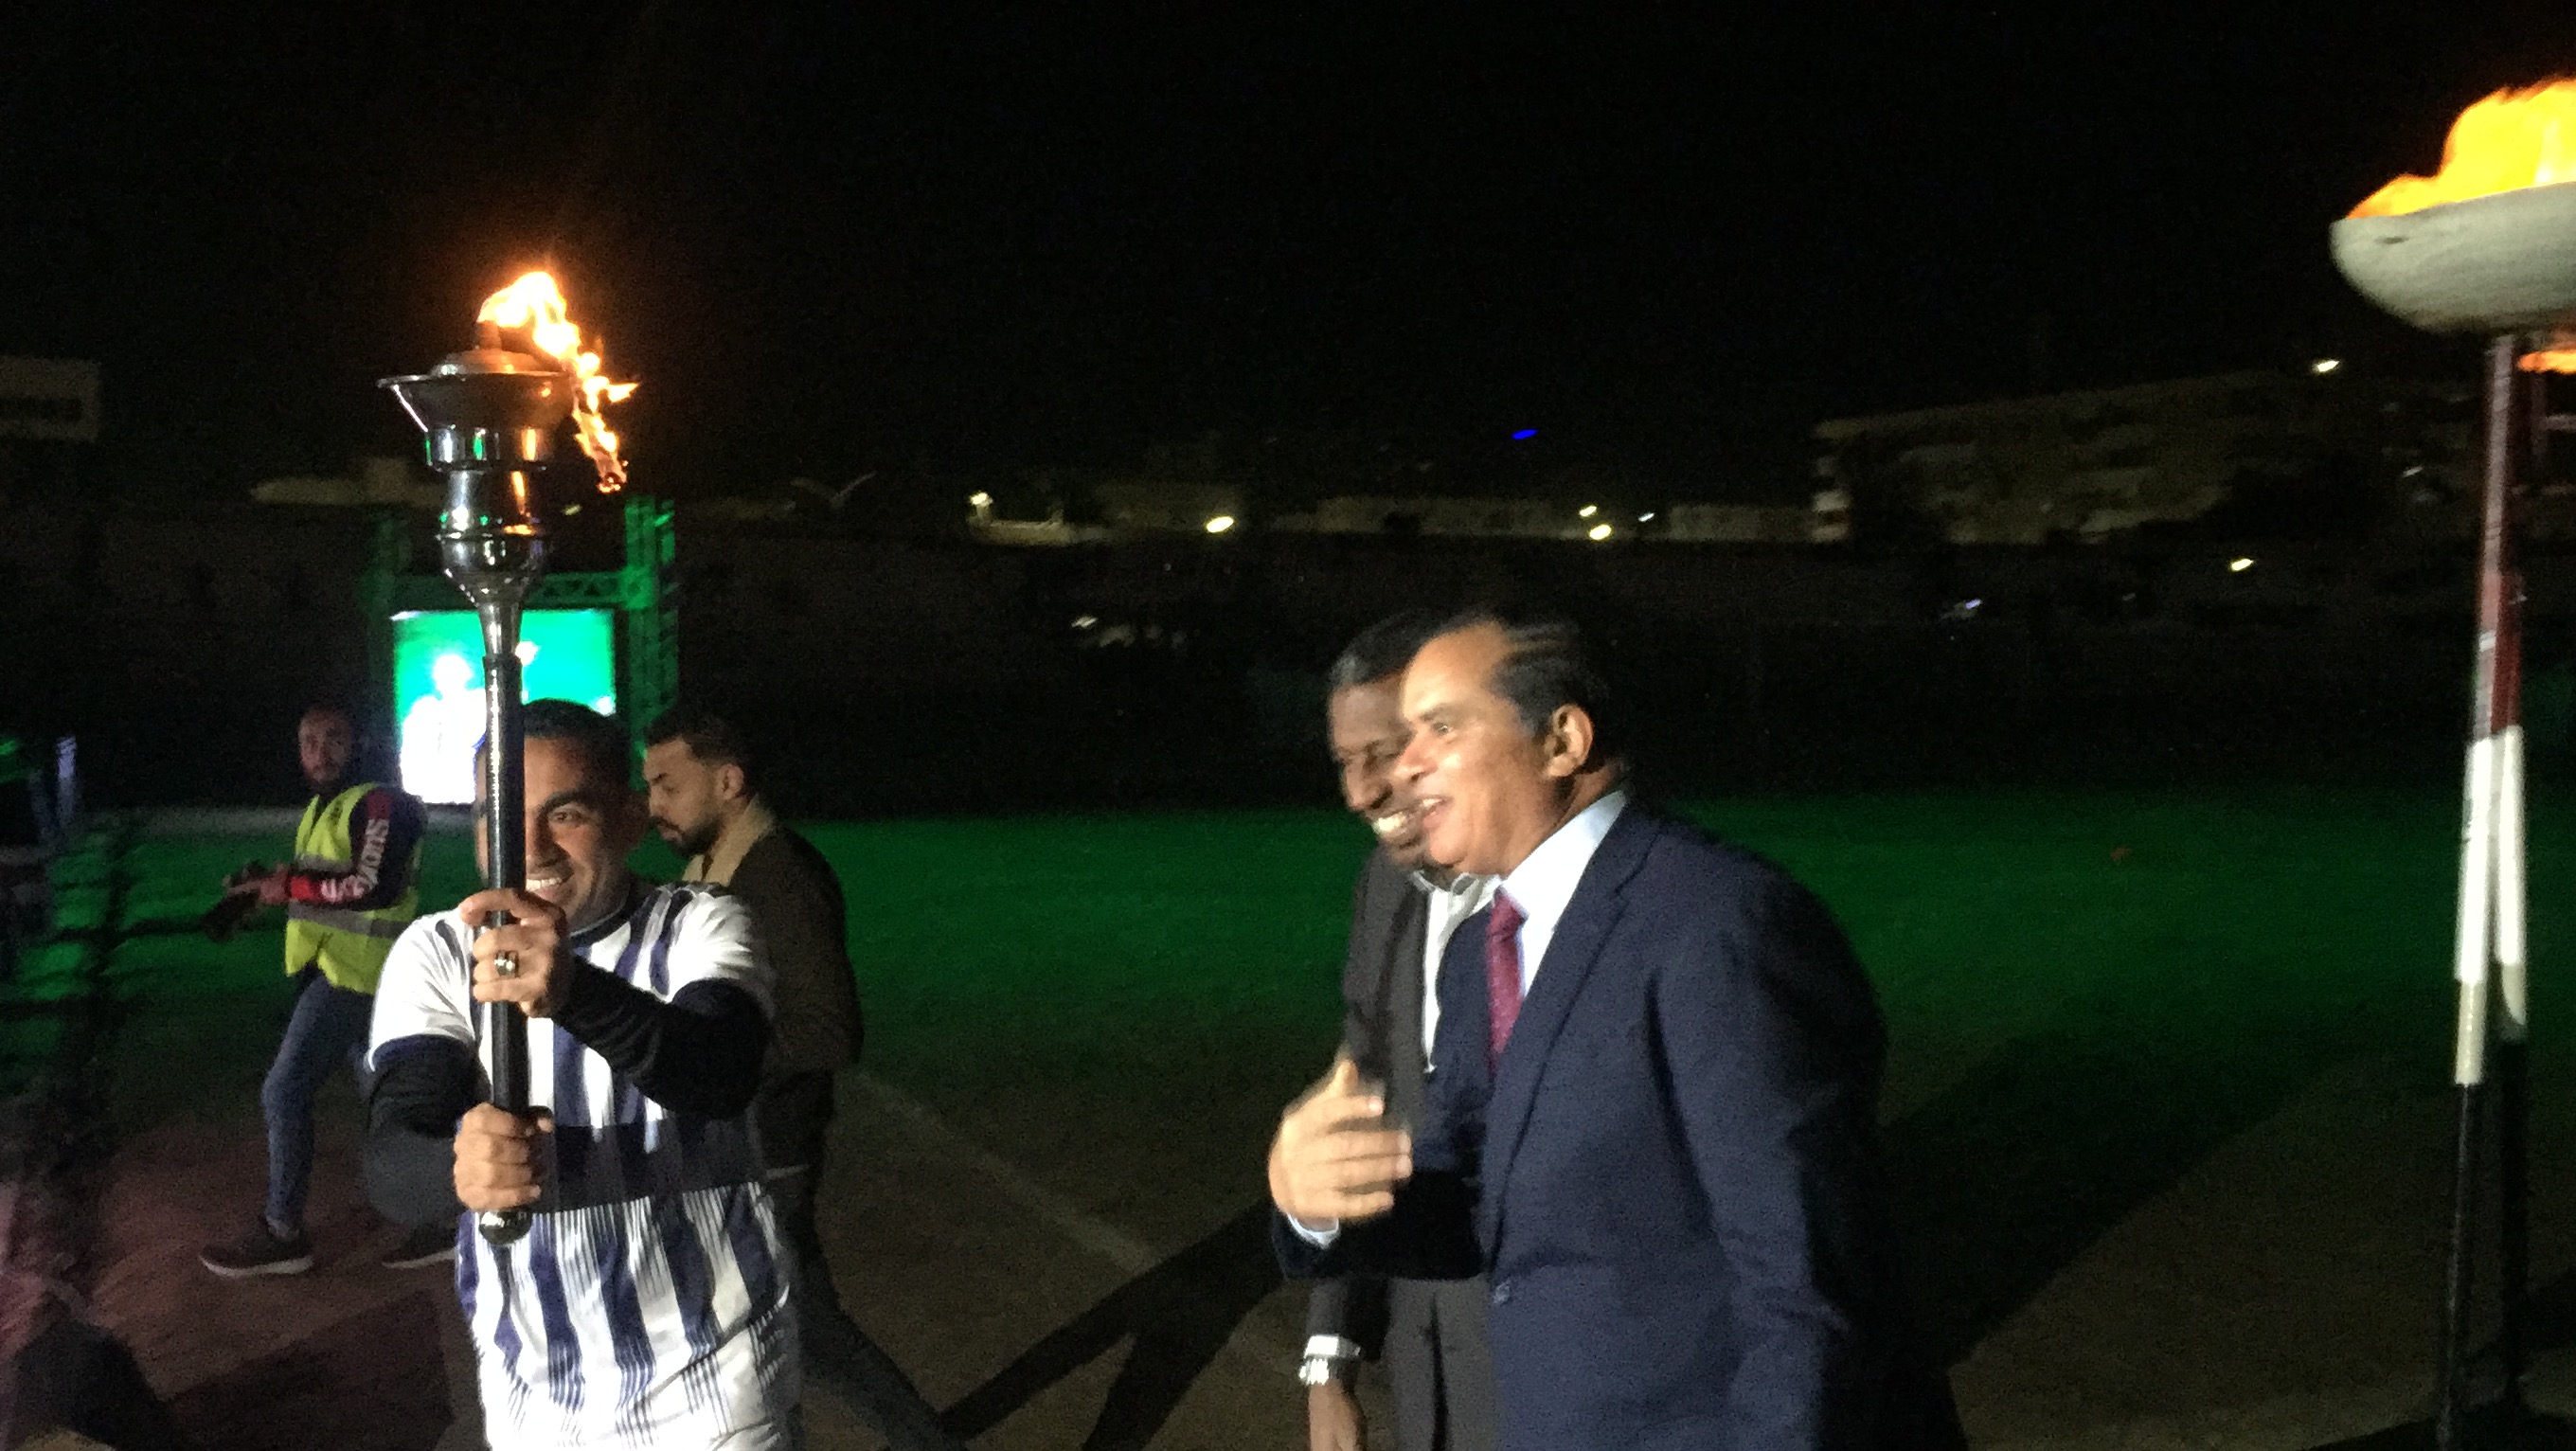 الكابتن ربيع ياسين ورئيس جامعة سوهاج يوقدان شعلة اسبوعا الجامعات (15)